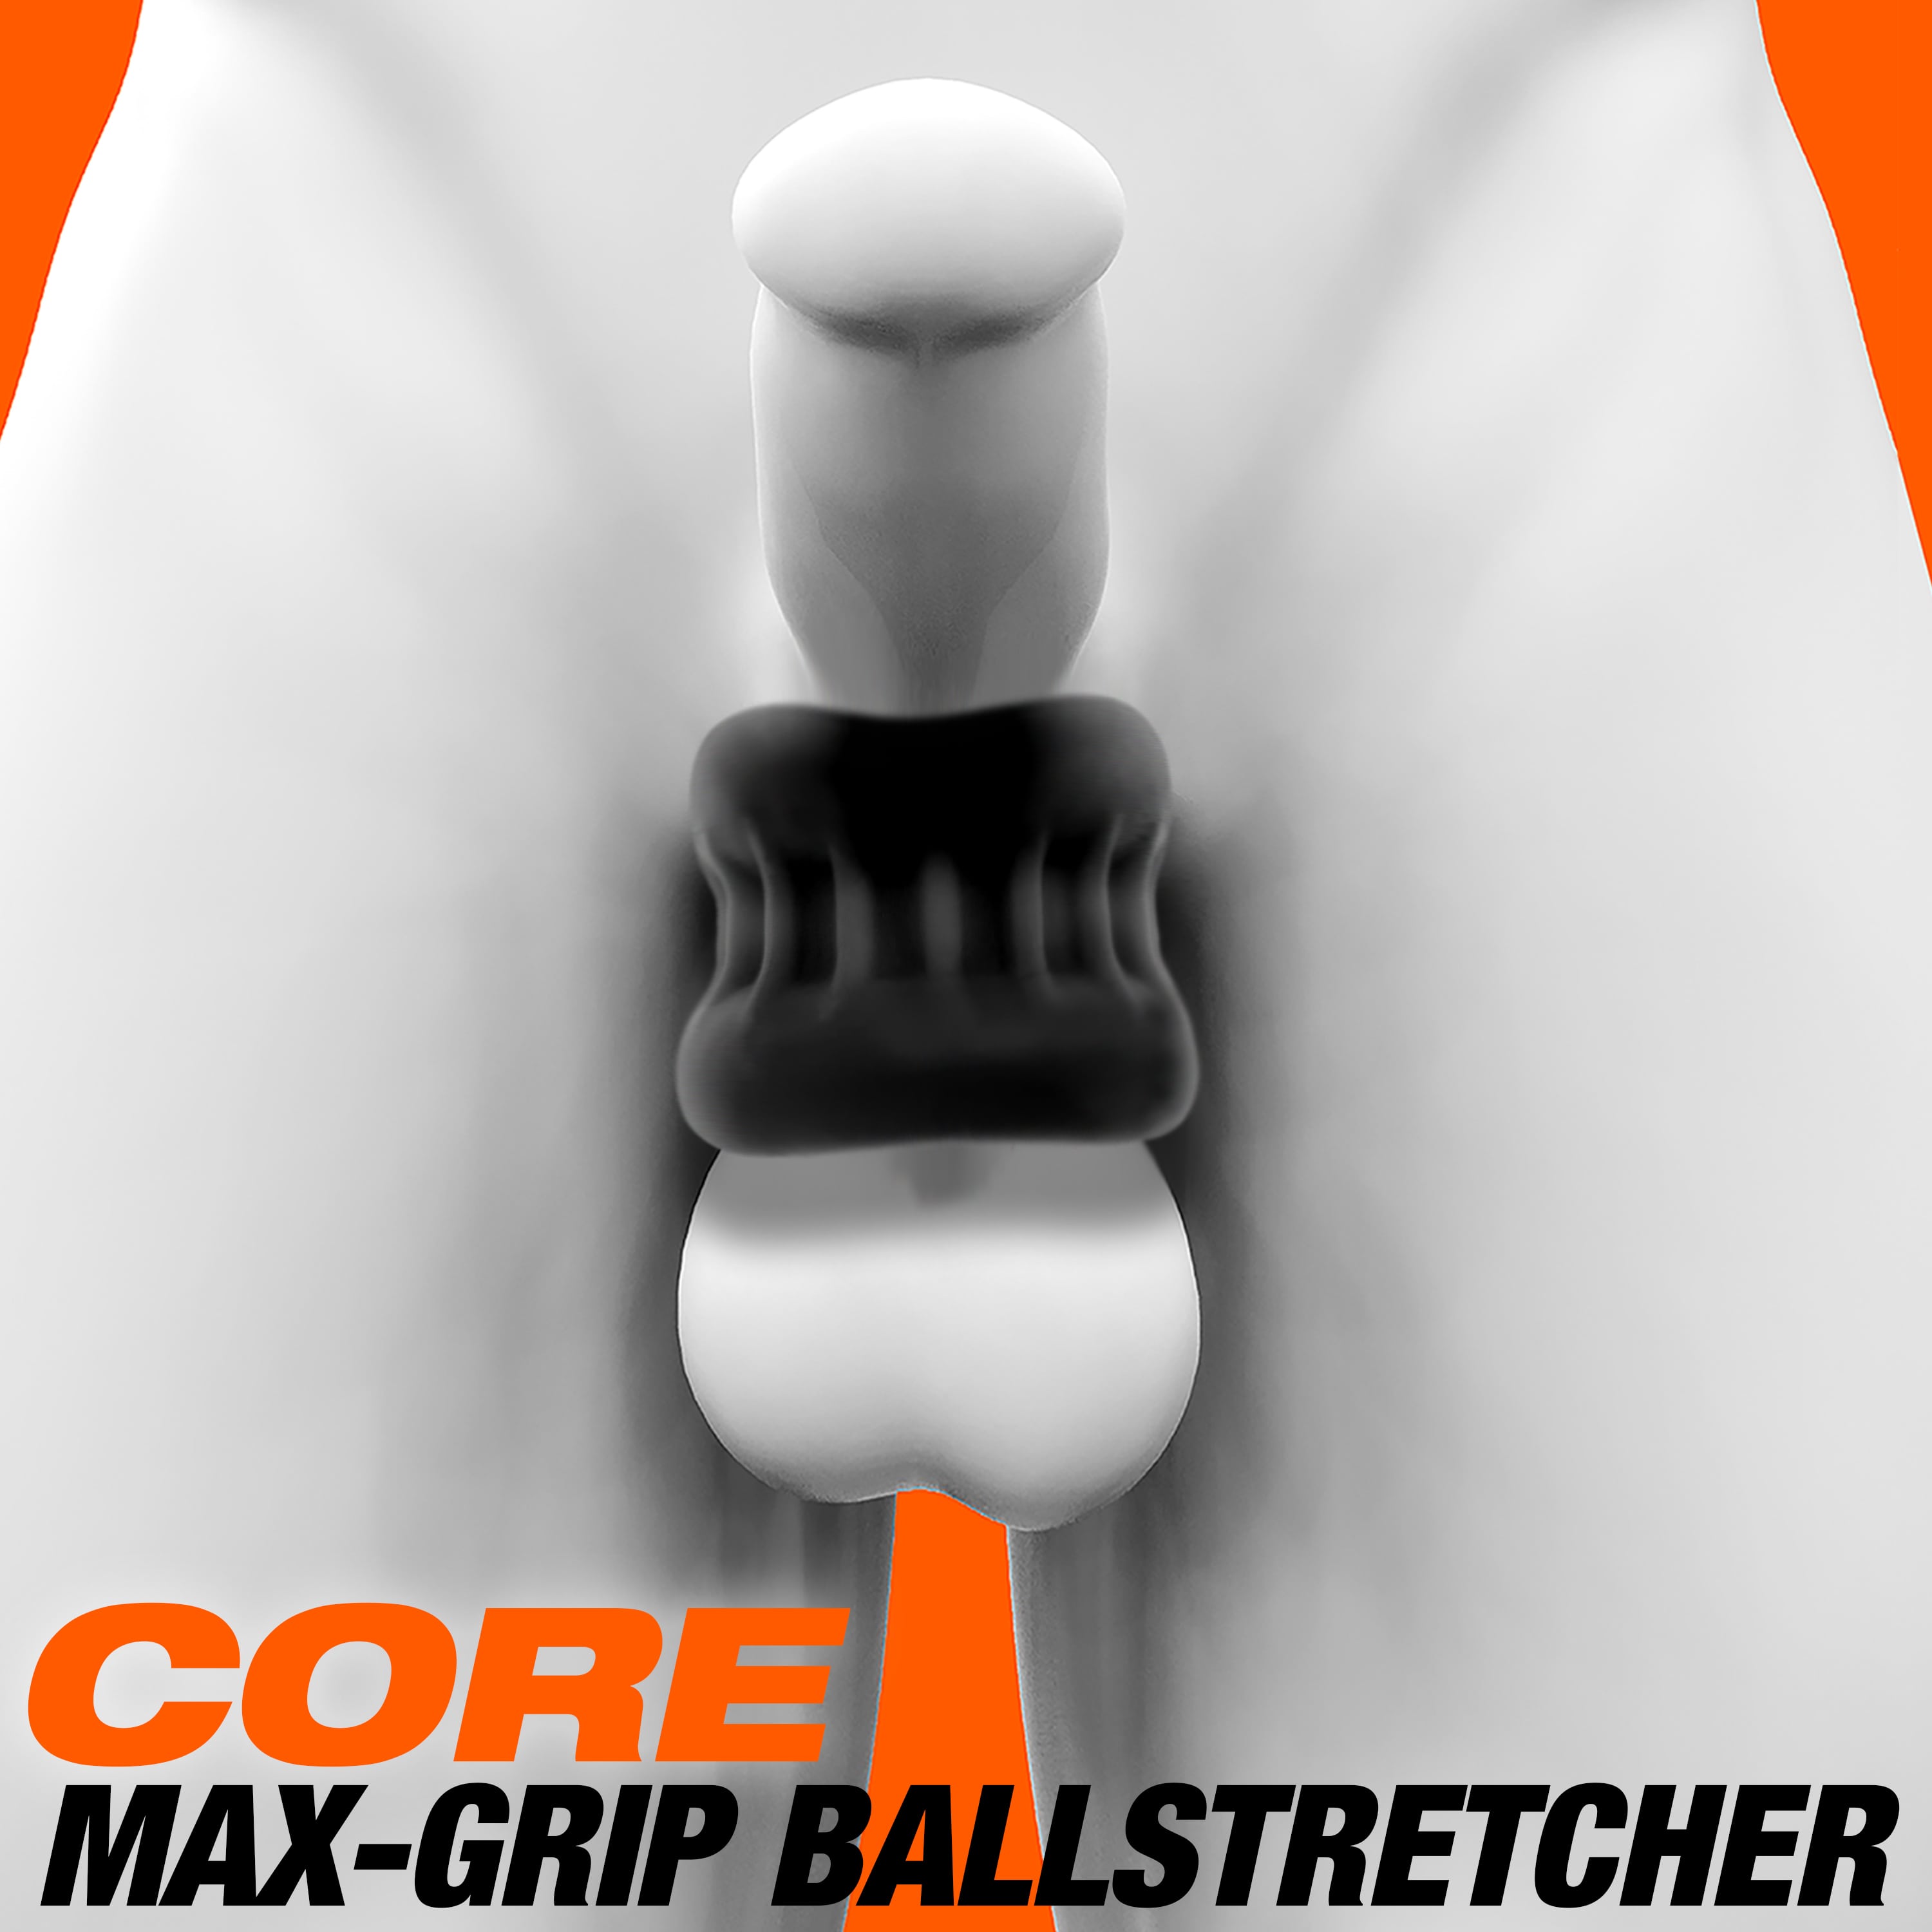 Oxballs CORE Ball Stretcher • Grip-Squeeze Ballstretcher